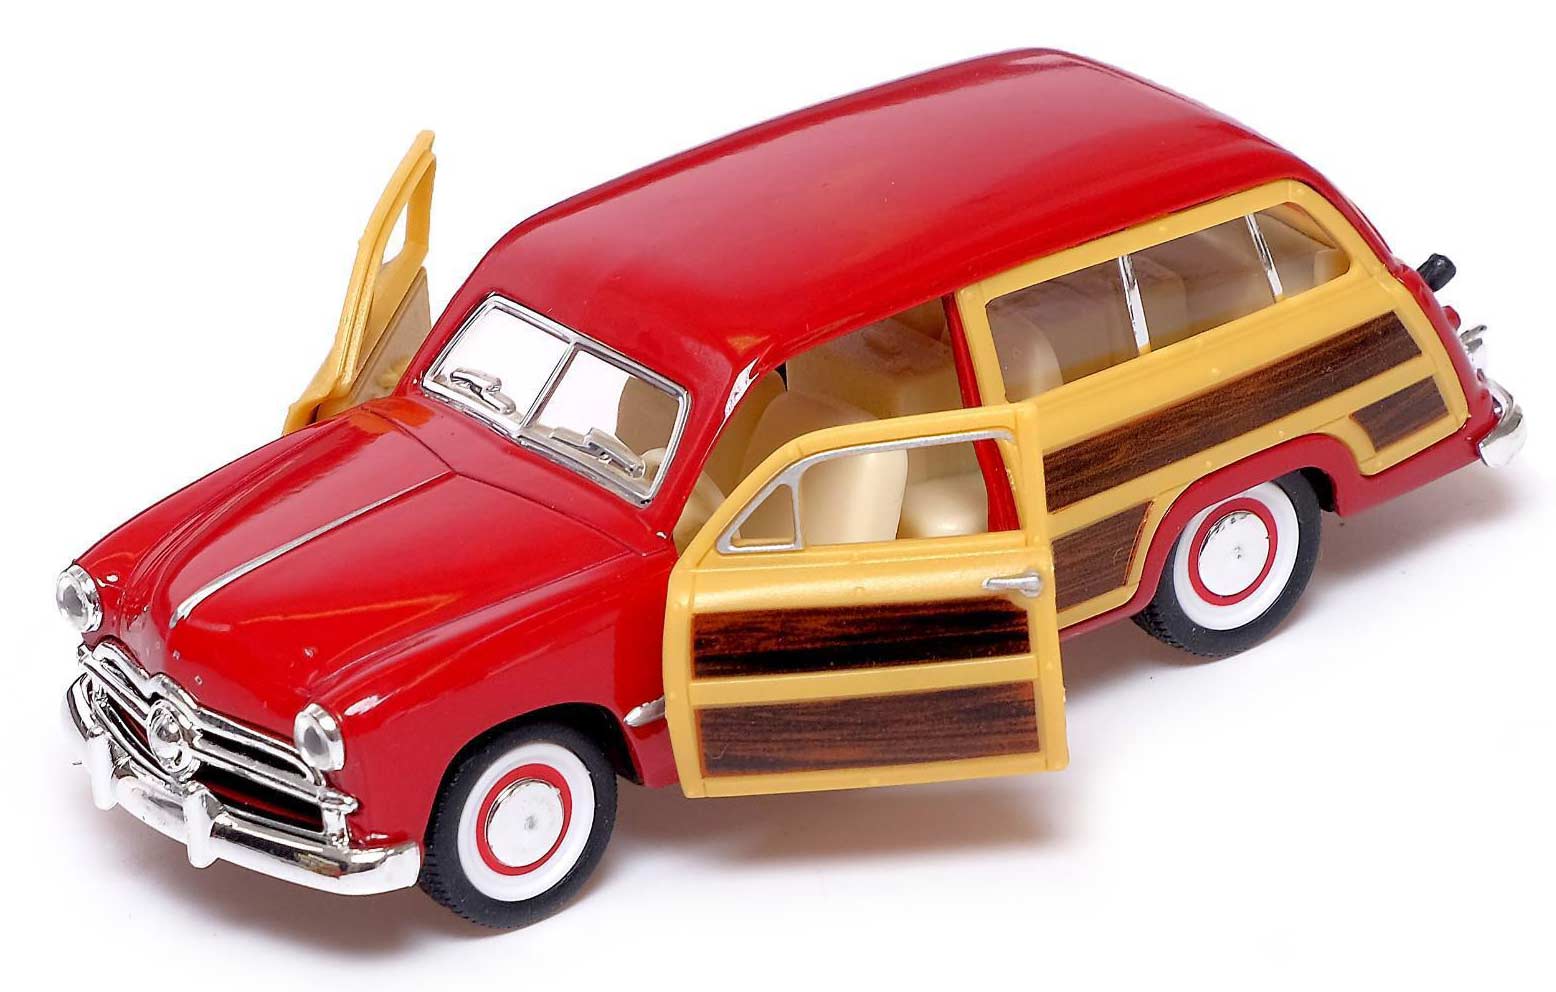 Машинка металлическая Kinsmart 1:40 «1949 Ford Woody Wagon» KT5402D инерционная / Красный